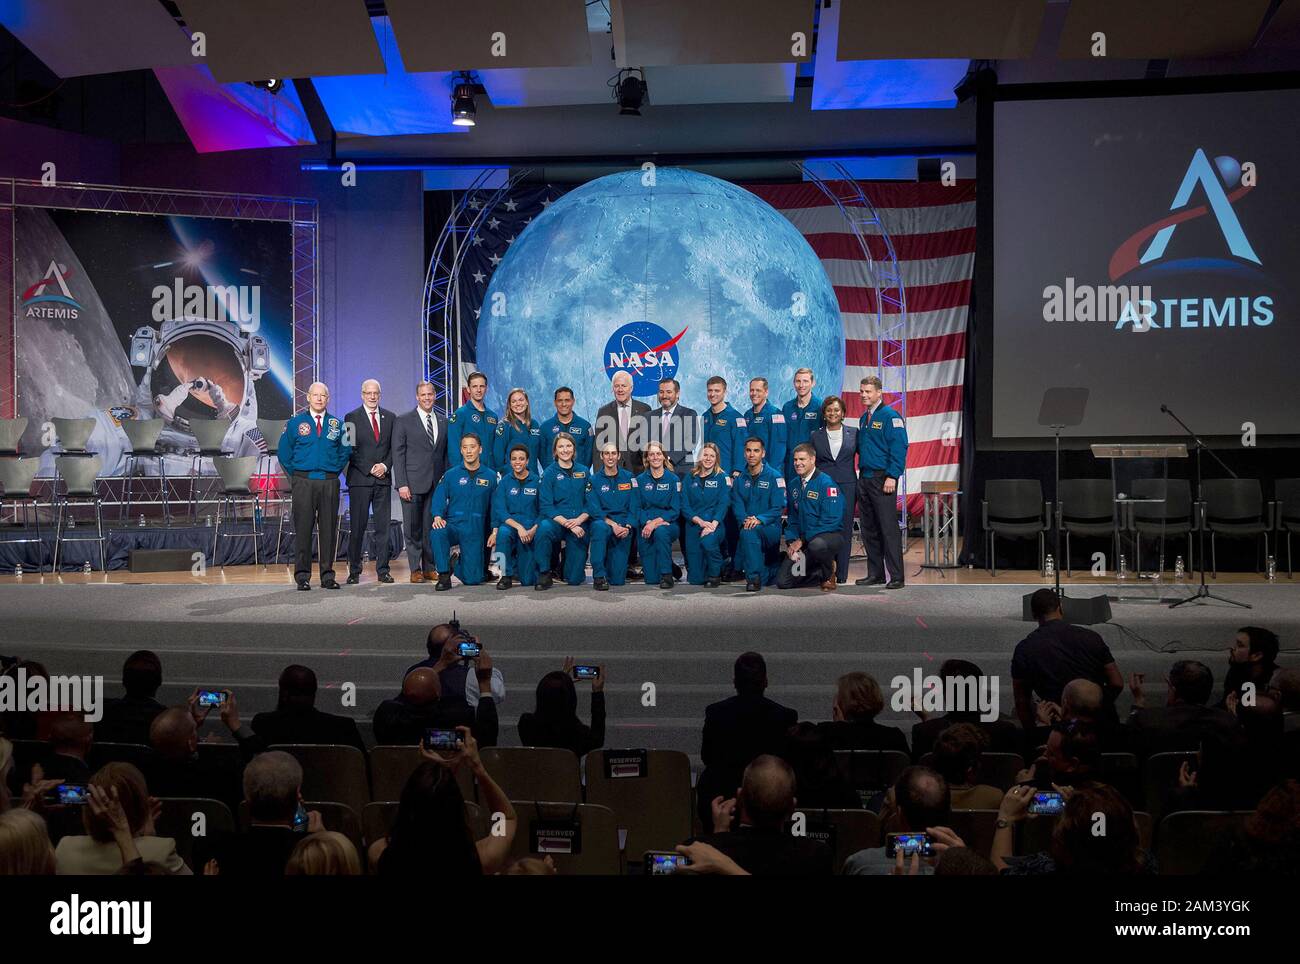 Houston, TEXAS - 10. Januar 2020 - Die Astronautenklasse 2017 posiert für ein Porträt mit NASA-Büros und Texas Senators im Johnson Space Center in Stockfoto